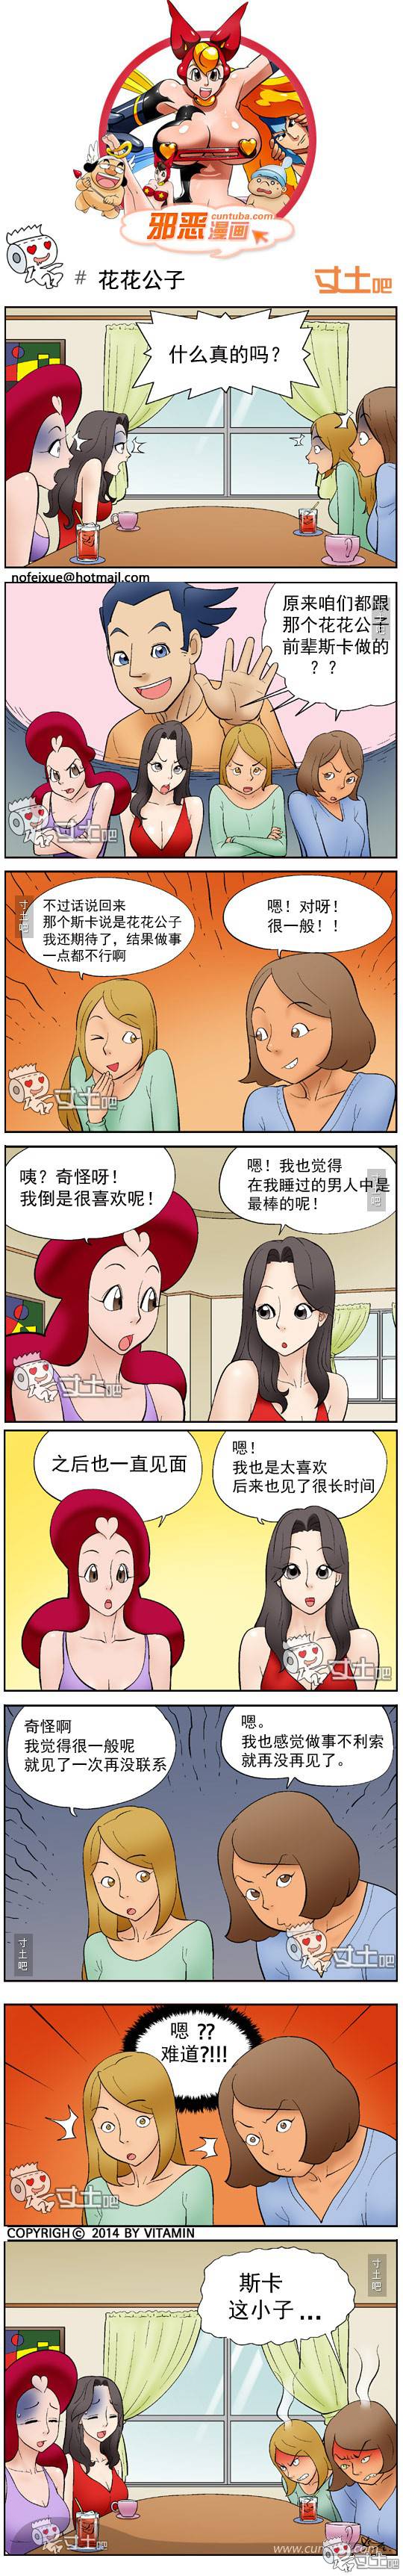 邪恶漫画爆笑囧图第265刊：遇水即化的比基尼